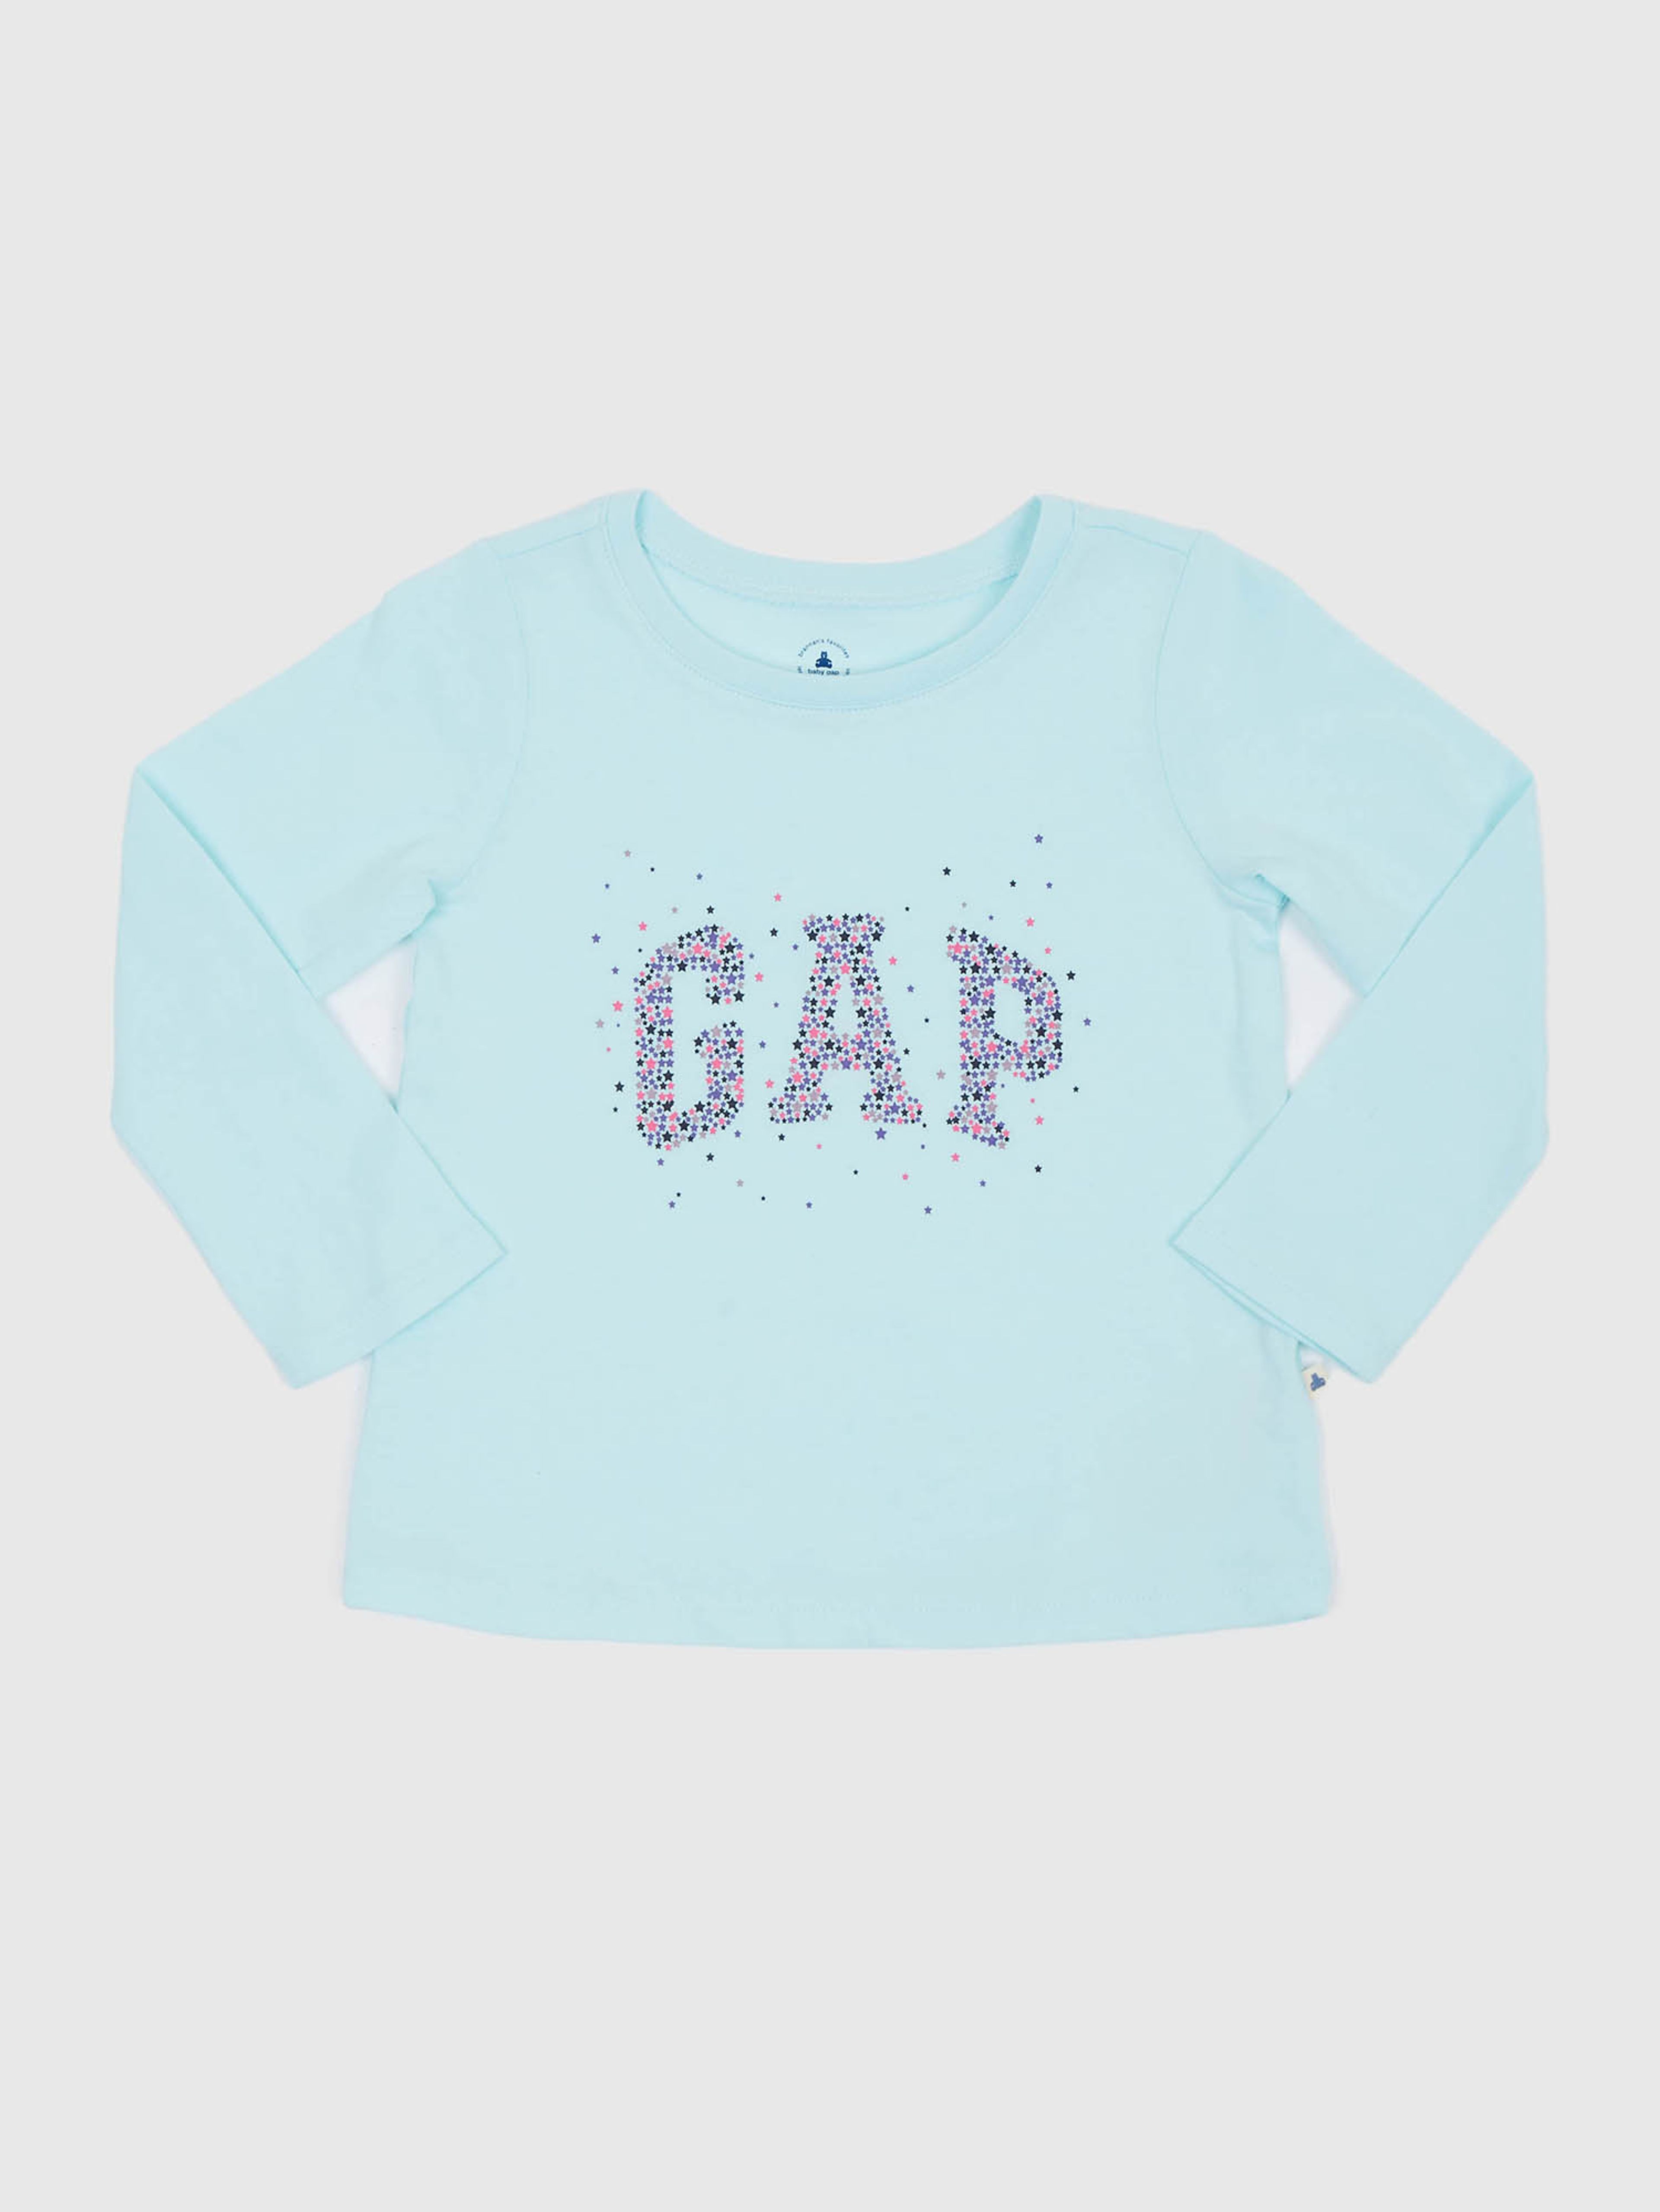 Dziecięca koszulka z logo GAP